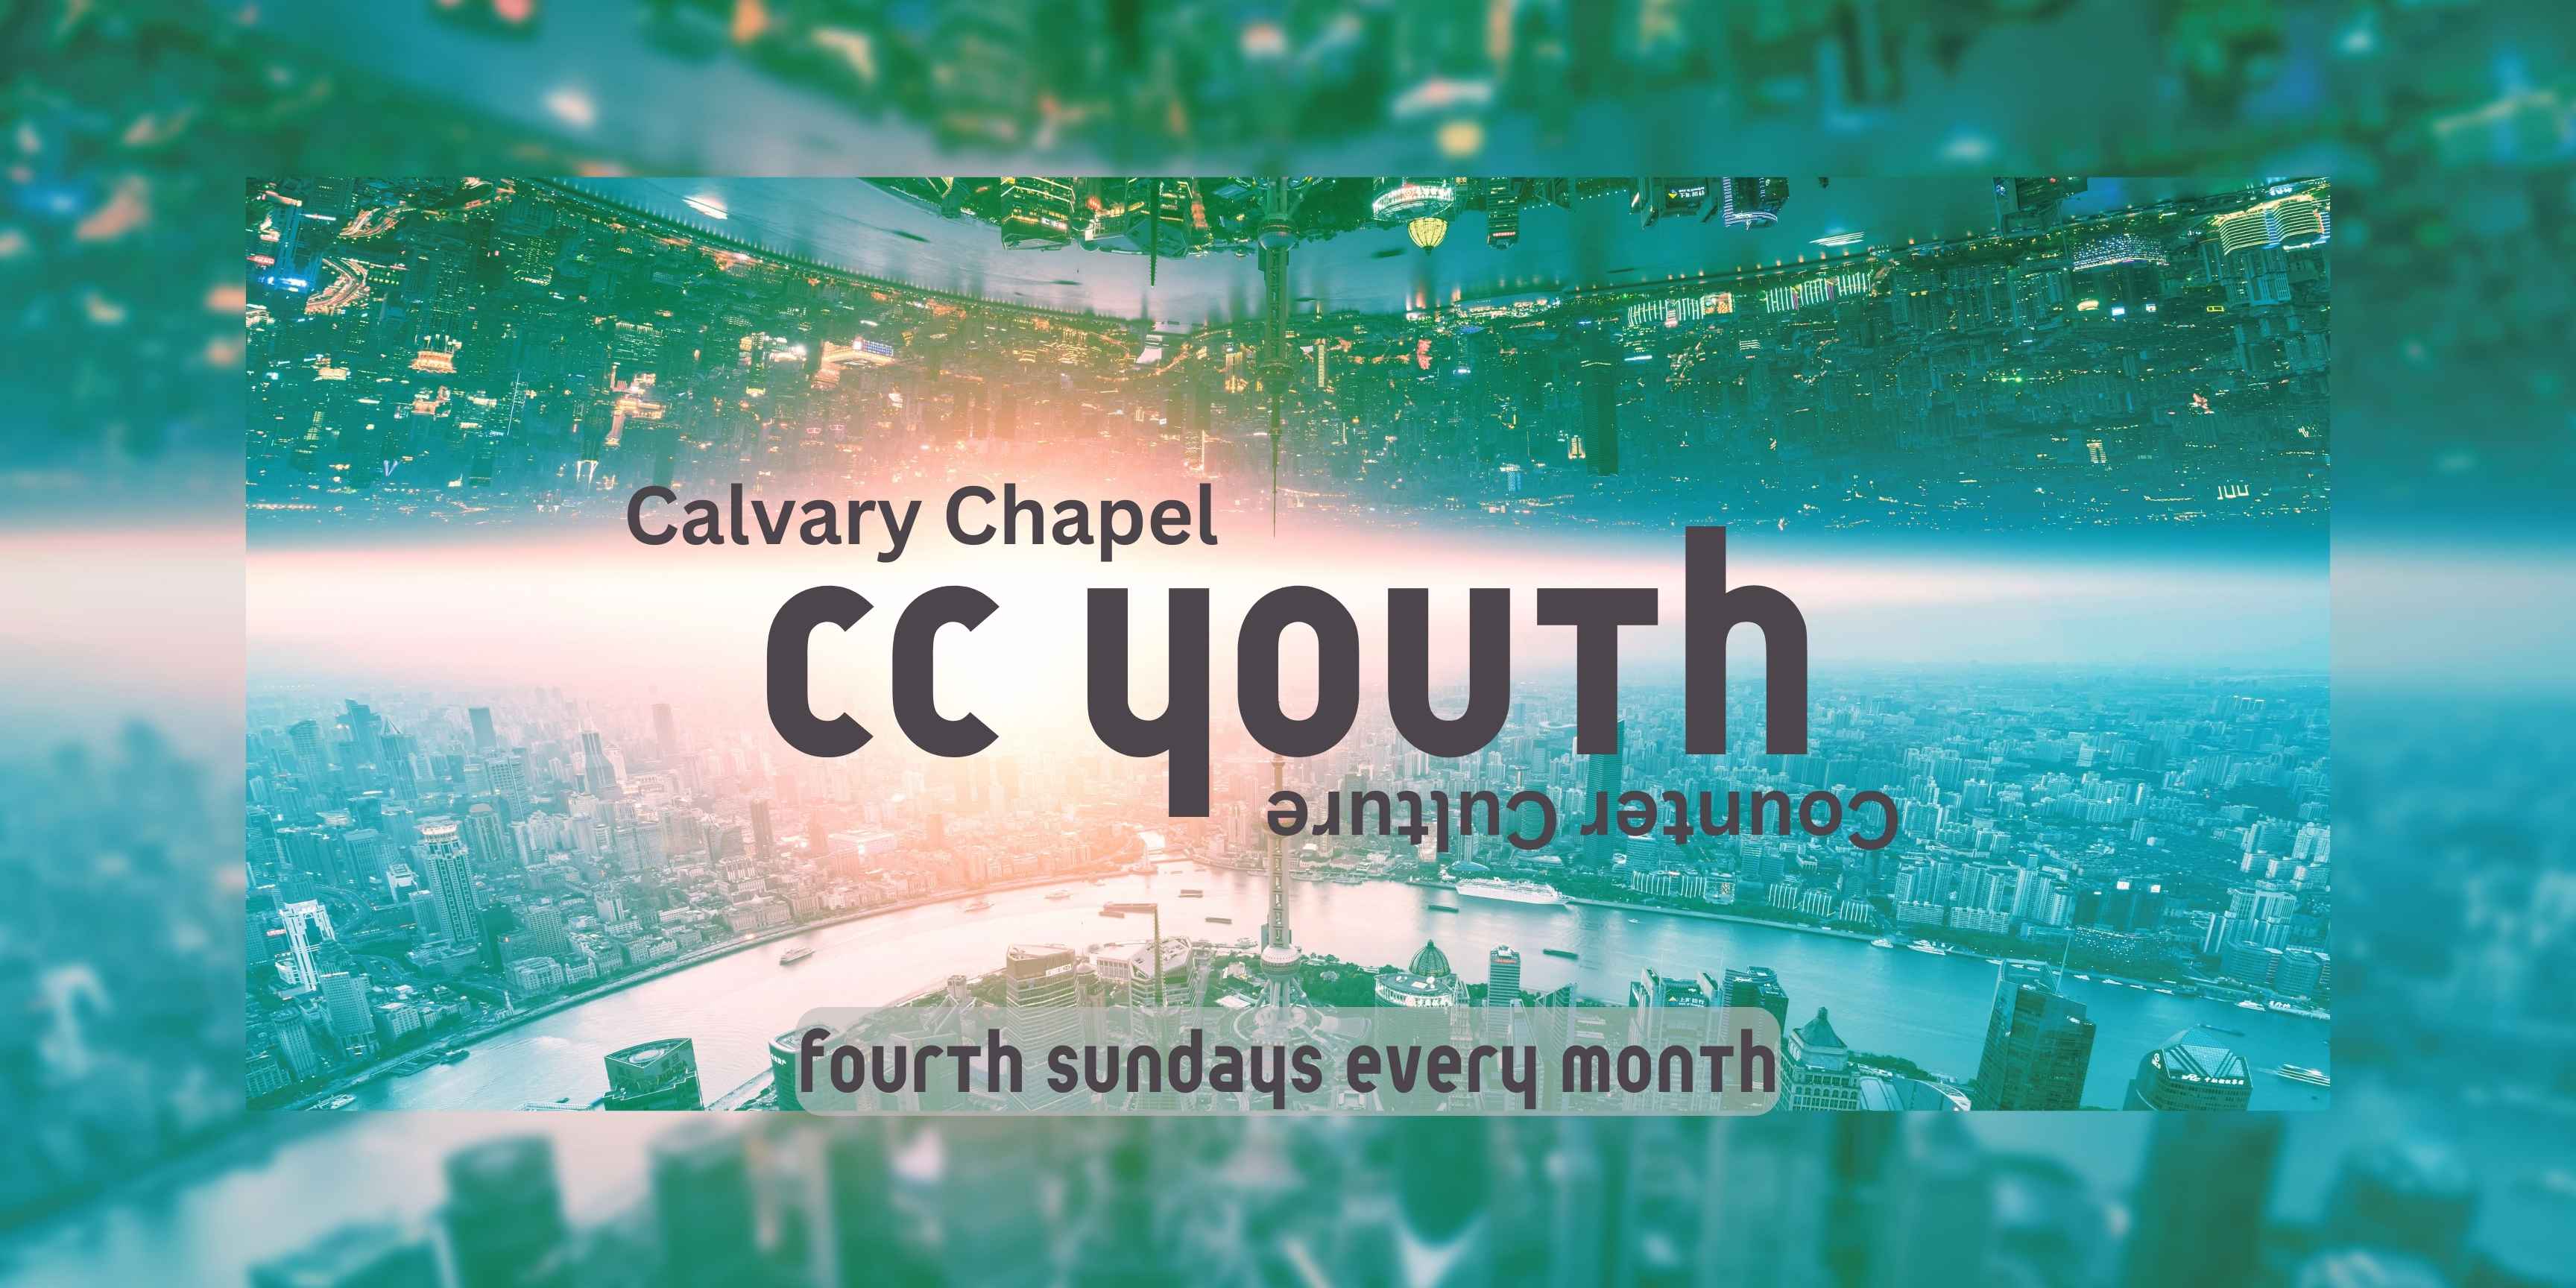 CC youth image